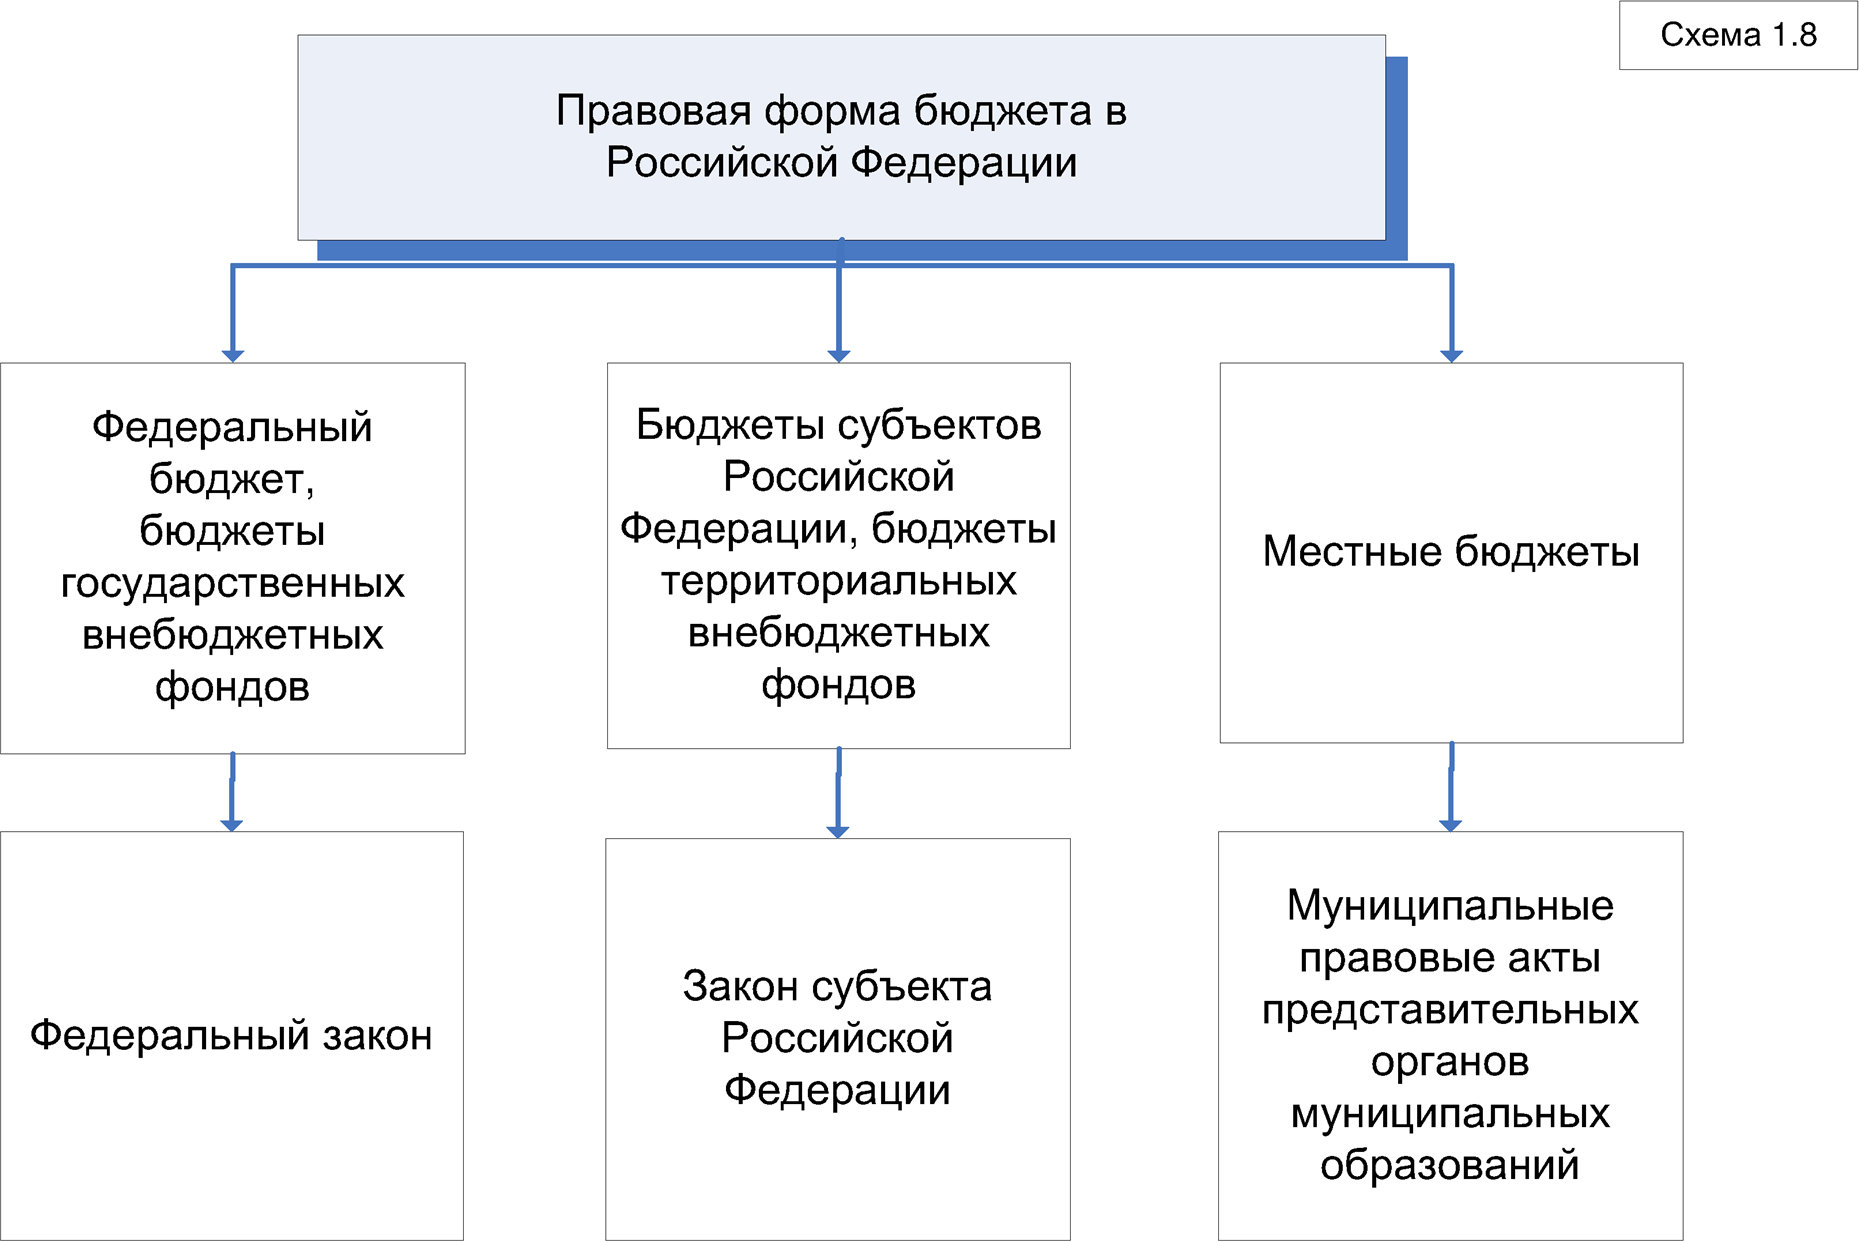 Правовая форма бюджета в Российской Федерации